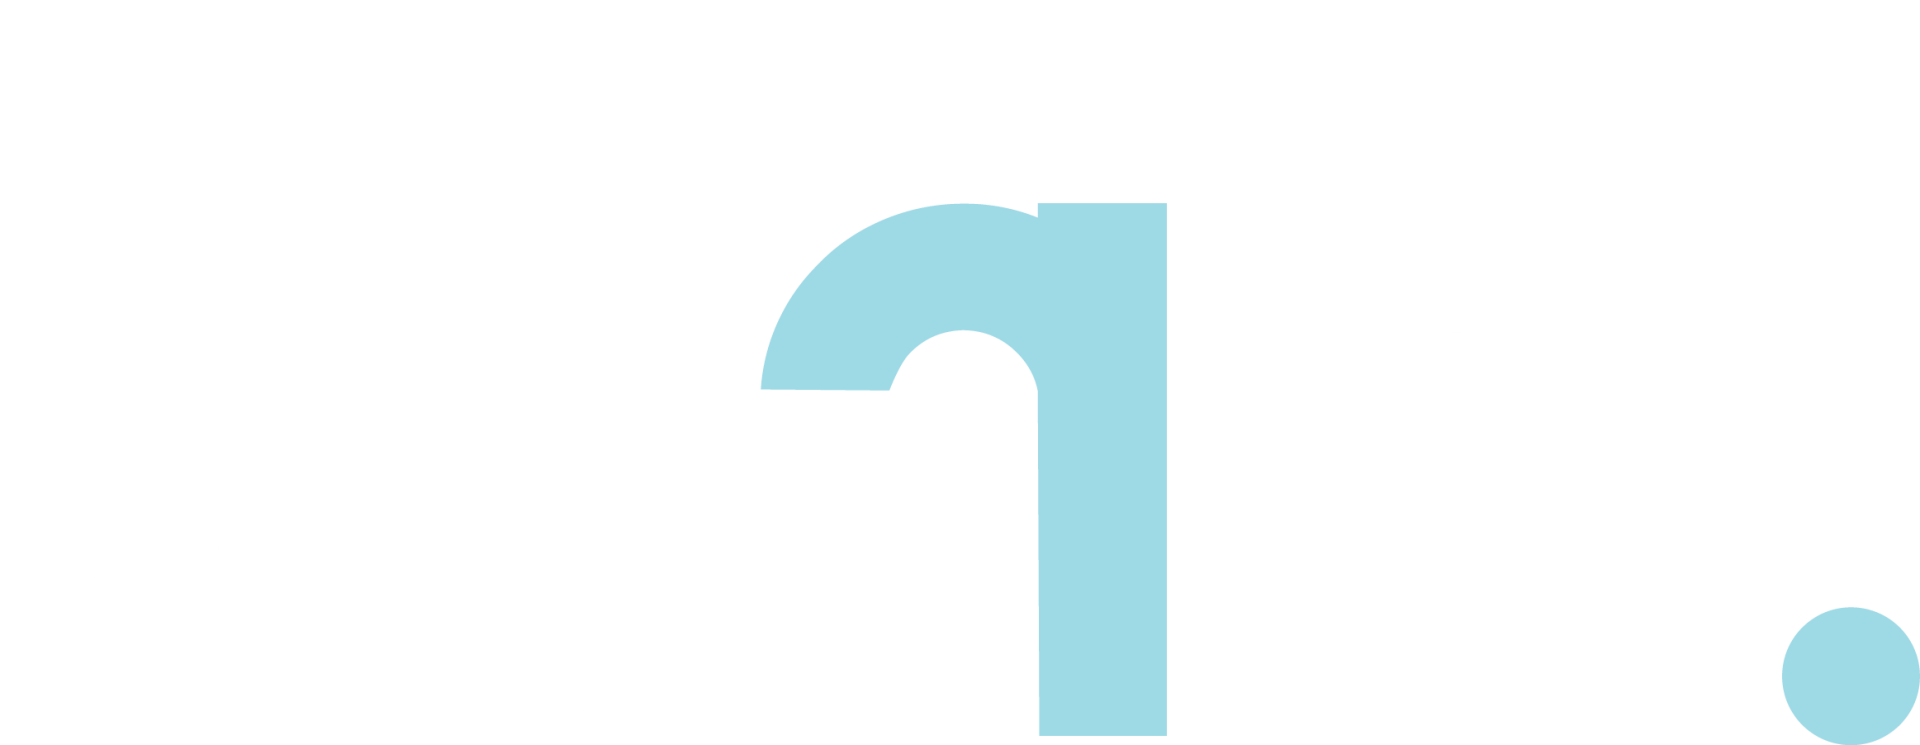 Turn Logo